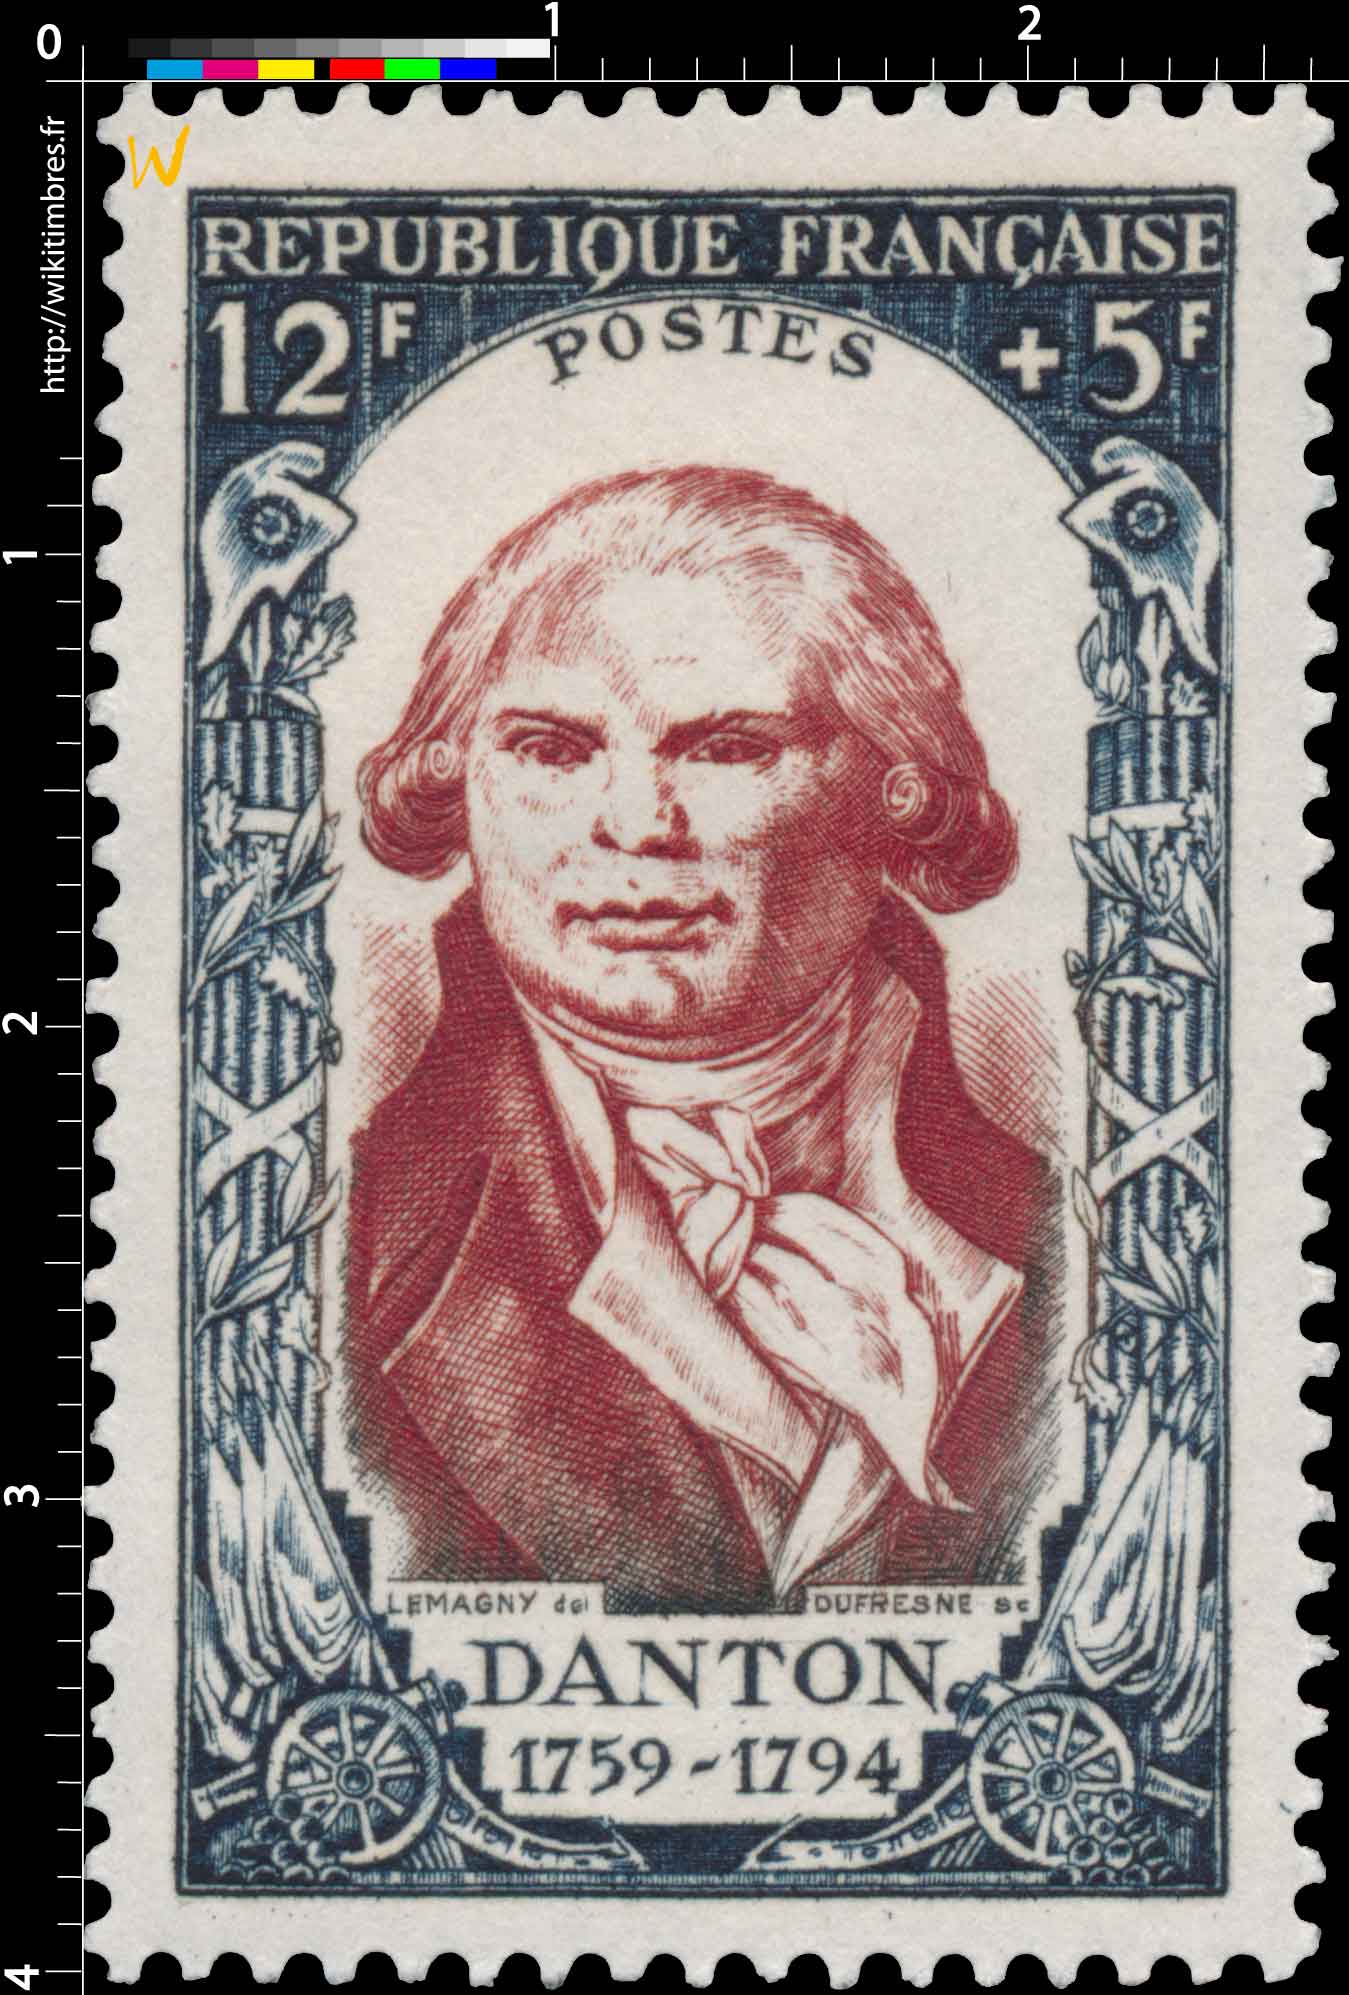 DANTON 1759-1794